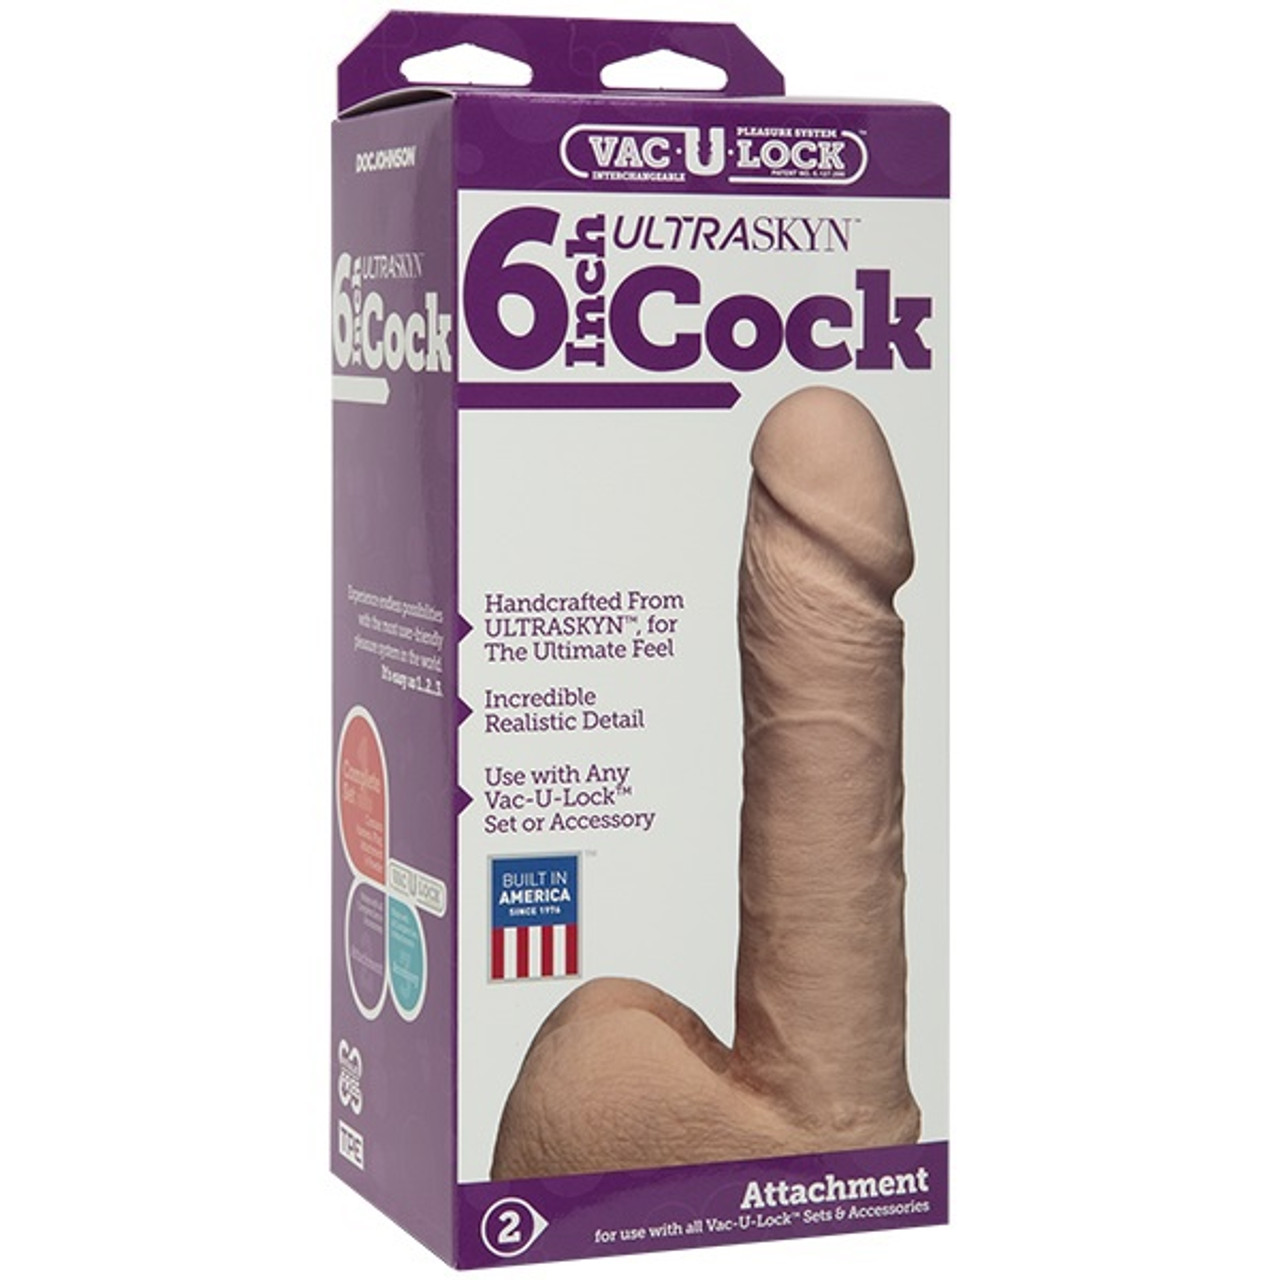 Vac-U-Lock 6" Ultraskyn Cock